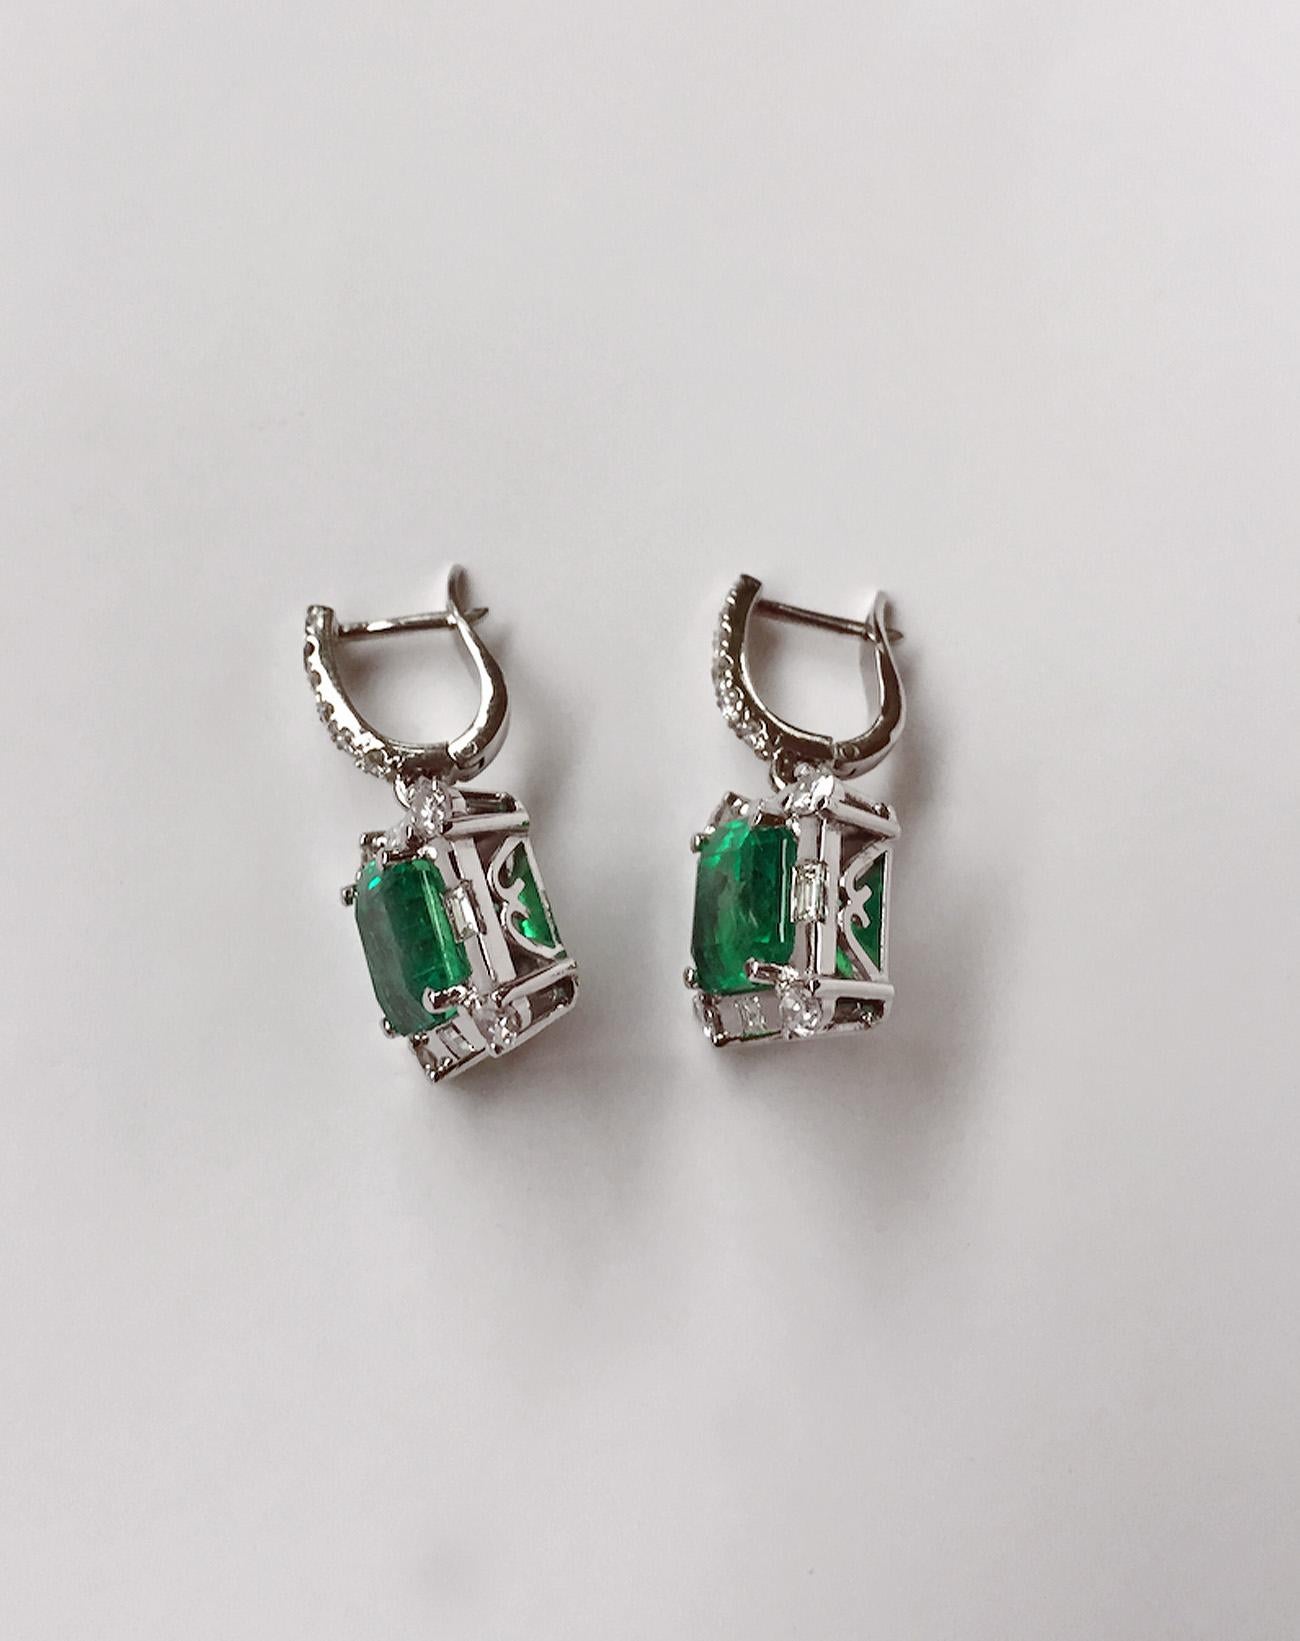 Certified 10.77 Carat Square Colombian Emerald Diamond Earrings 18 Karat For Sale 7